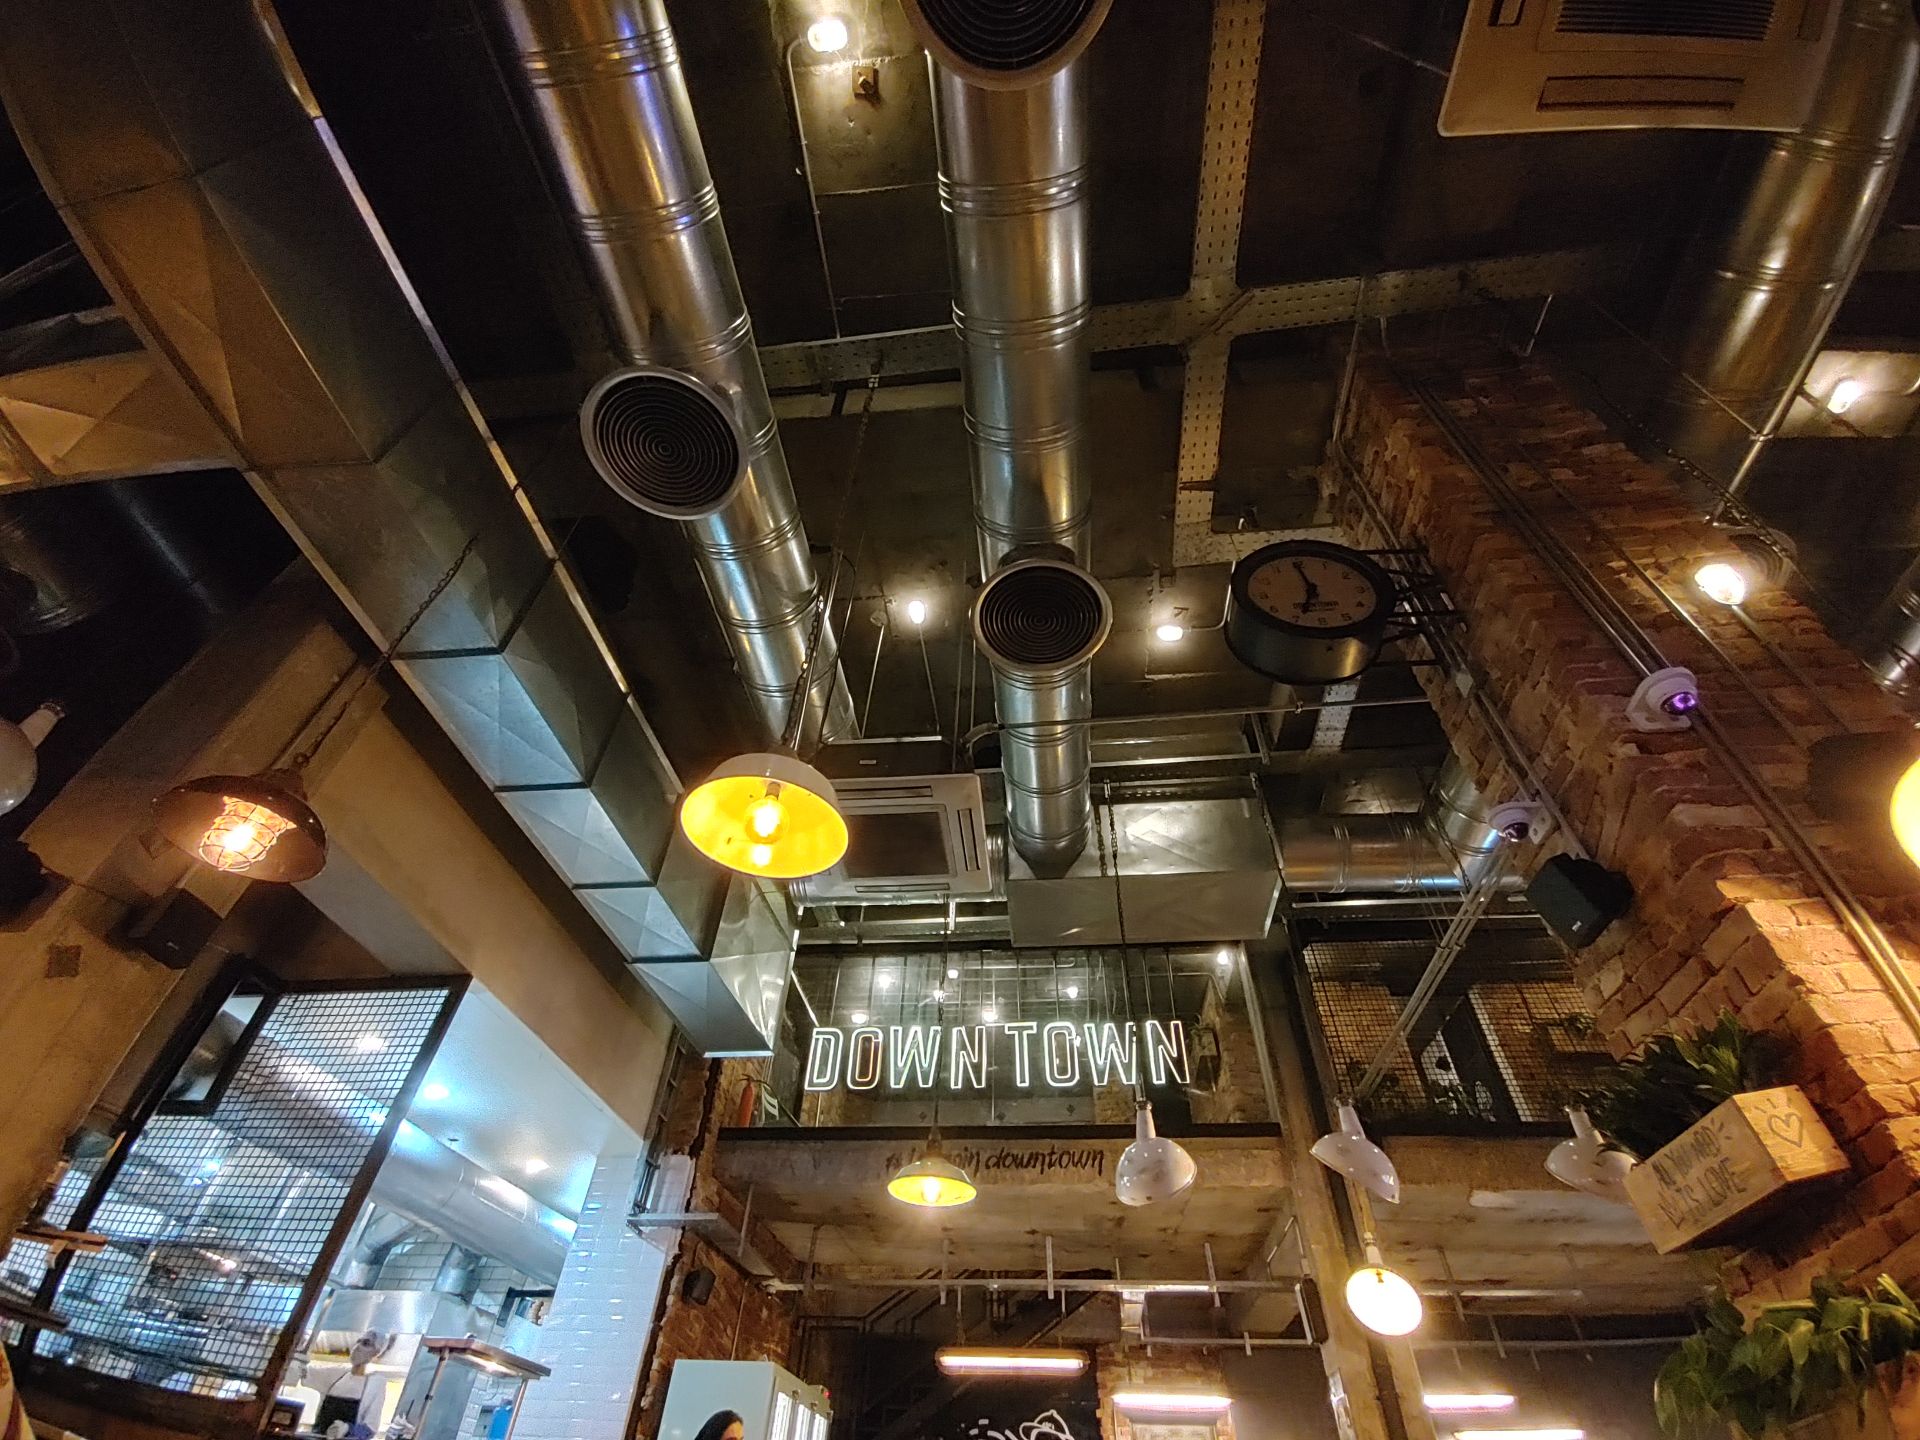 عکس نمونه دوربین اولتراواید ال جی ولوت در طول تاریکی - رستوران دان تان